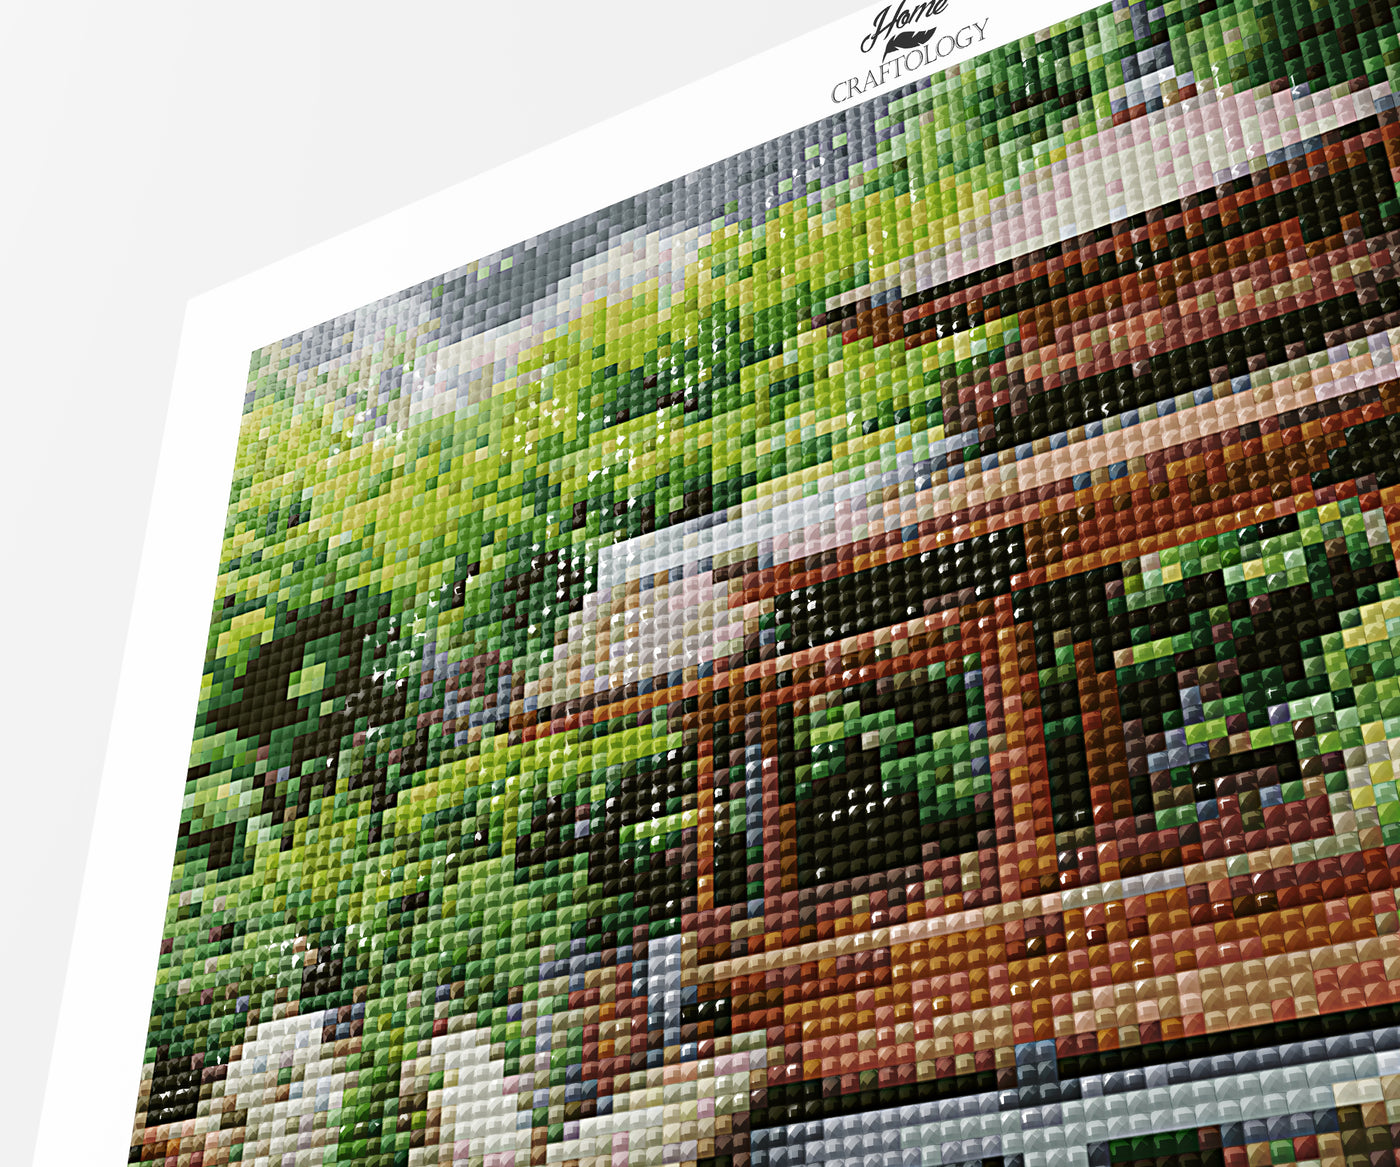 Japanese Garden with Pond - Premium Diamond Painting Kit